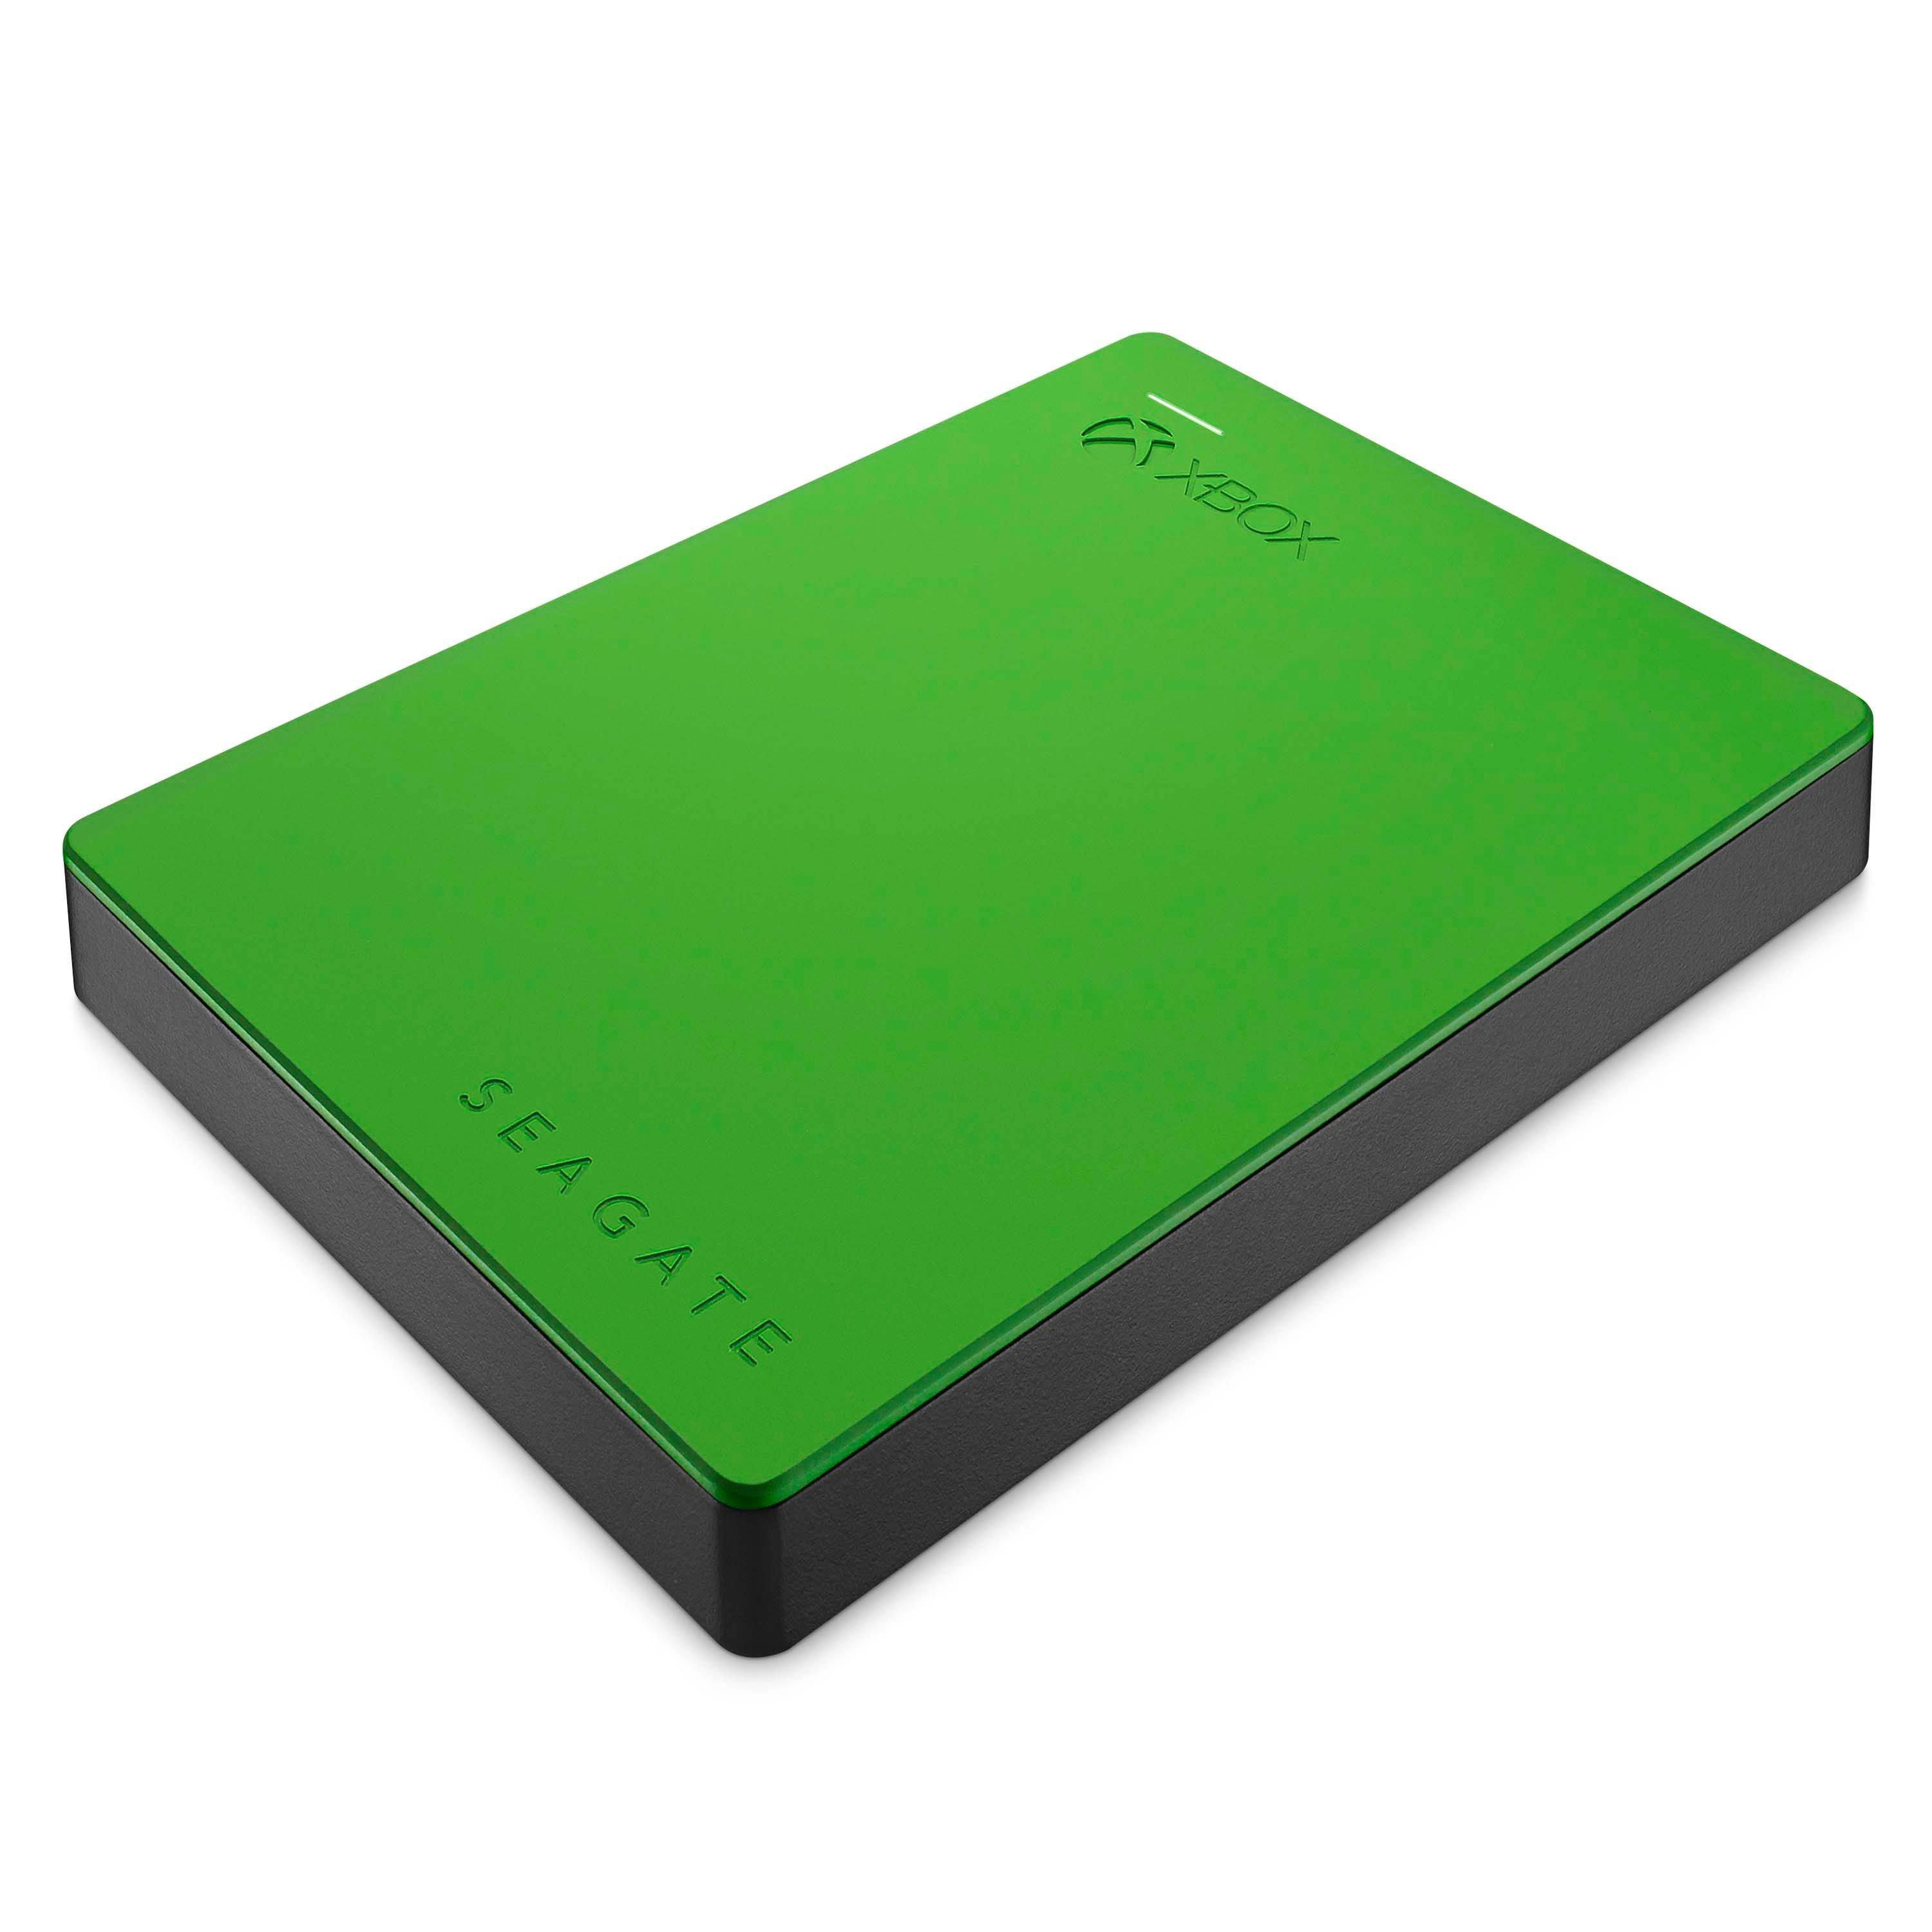 xbox external hard drive gamestop